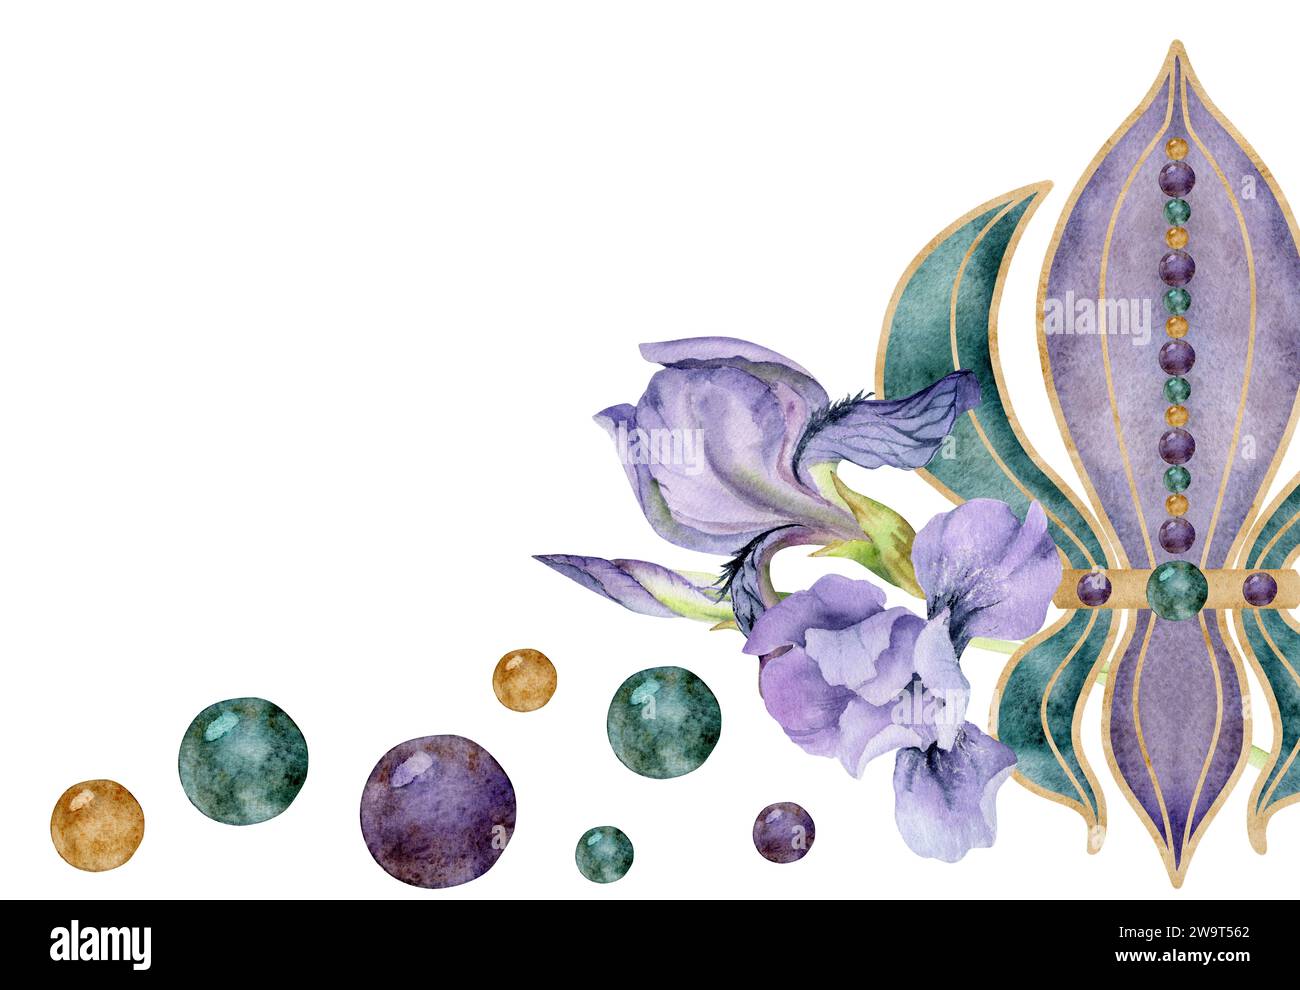 Simboli del carnevale del Mardi Gras ad acquerello disegnati a mano. Fleur de lis fiore di Iris di giglio francese perle di vetro coriandoli baubles composizione isolata su bianco Foto Stock